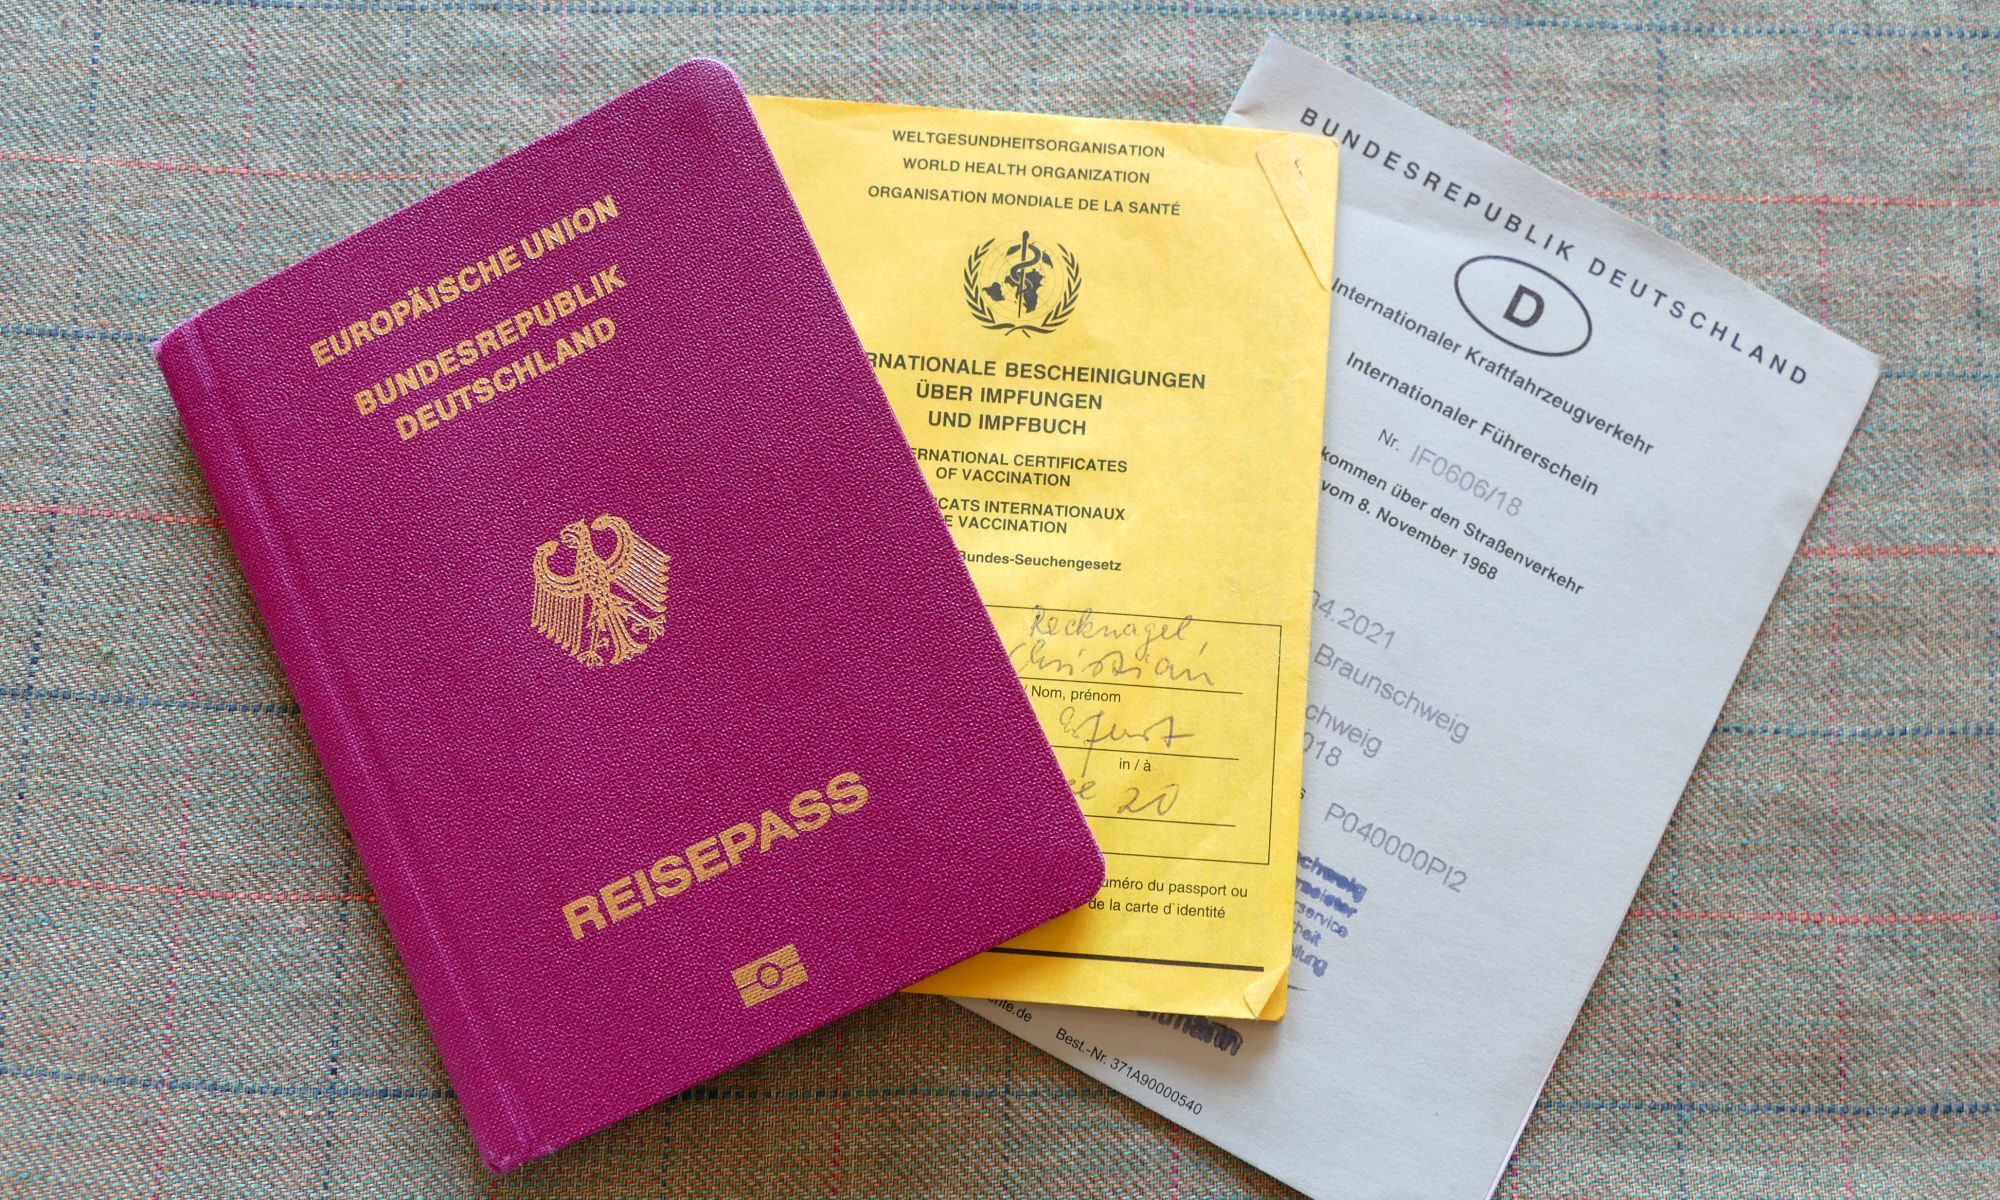 Reisevorbereitung, Reisepass, Impfausweis, Internationaler Führerschein